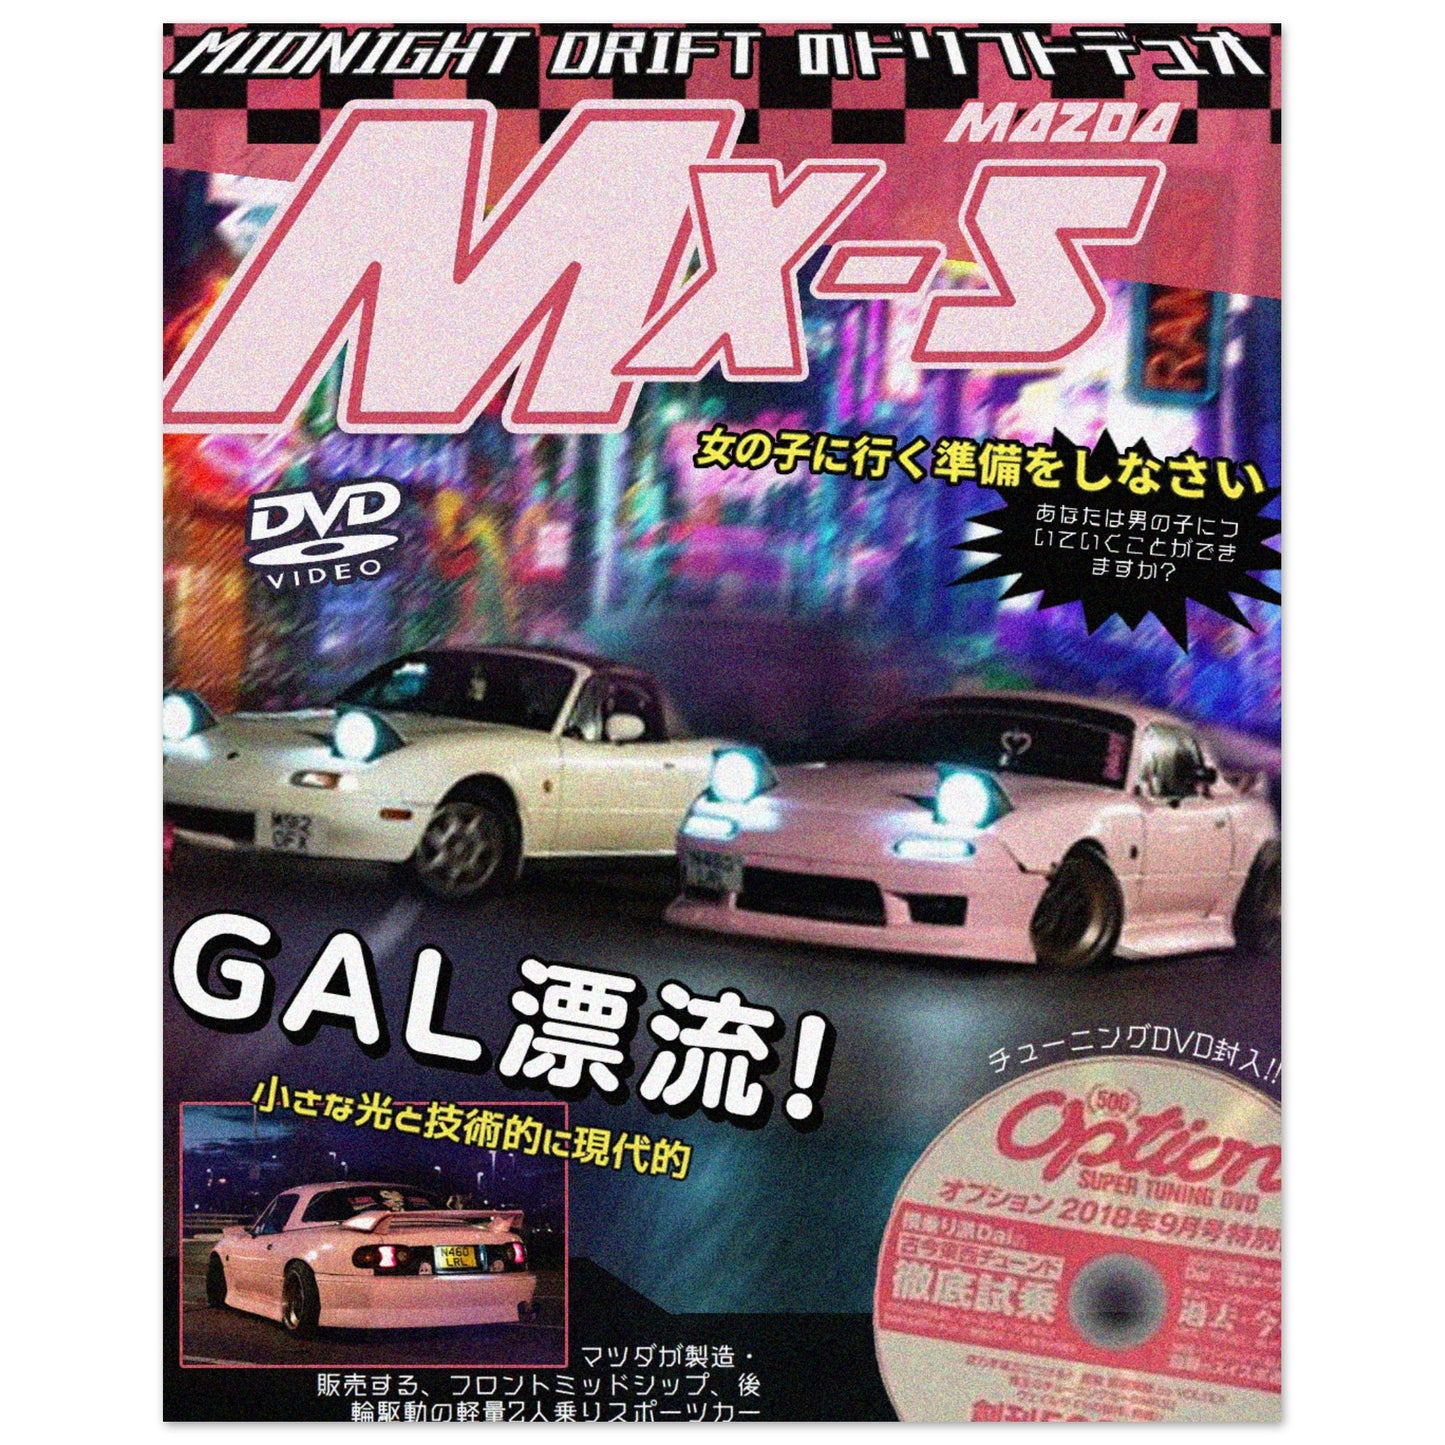 Mazda MX-5 poster